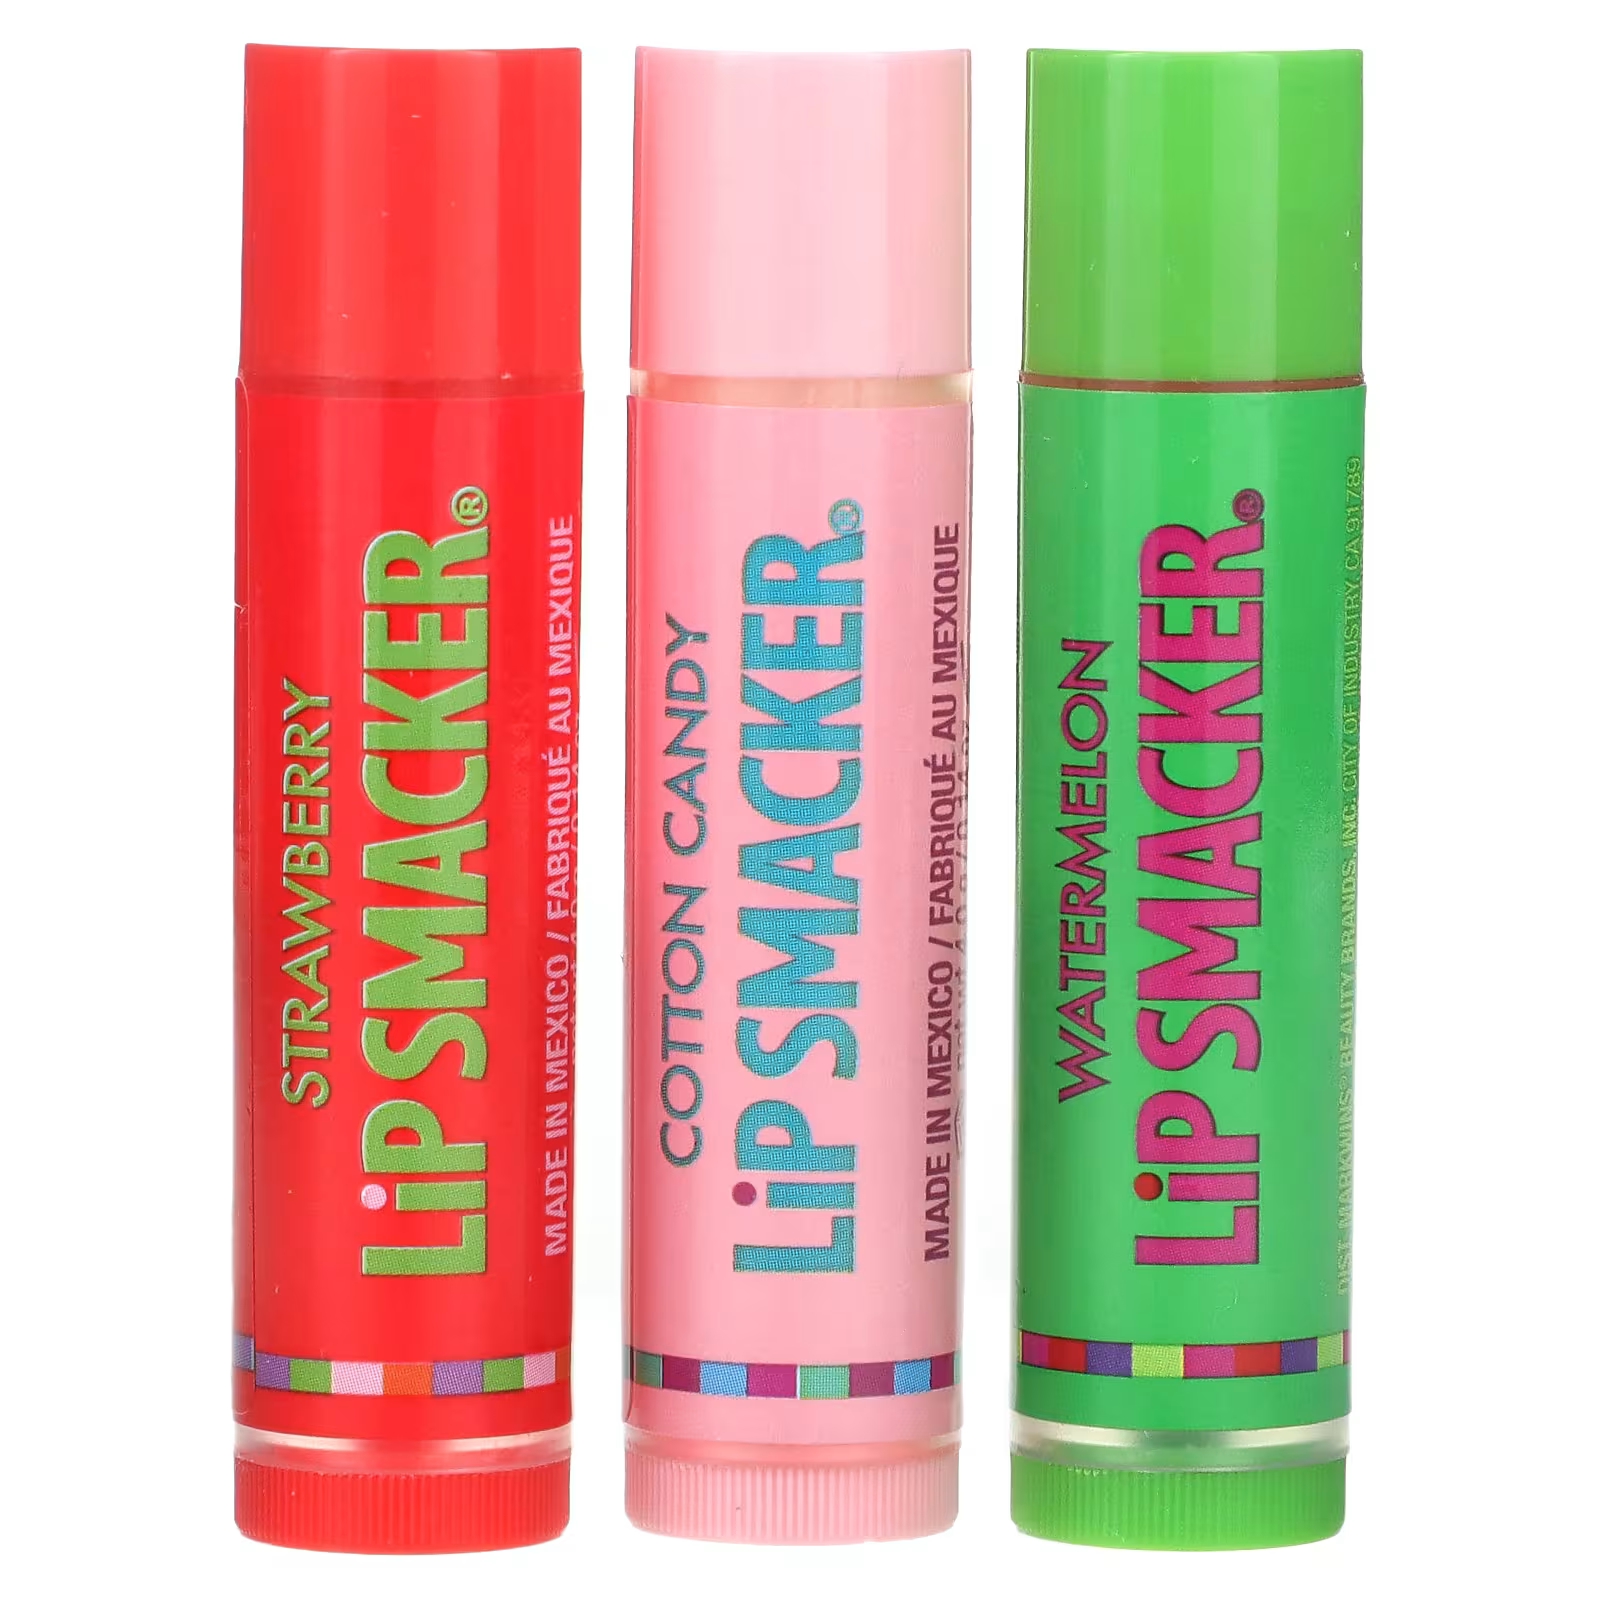 Бальзам для губ Lip Smacker Original & Best Flavors клубника, сахарная вата, арбуз бальзам для губ lip smacker original